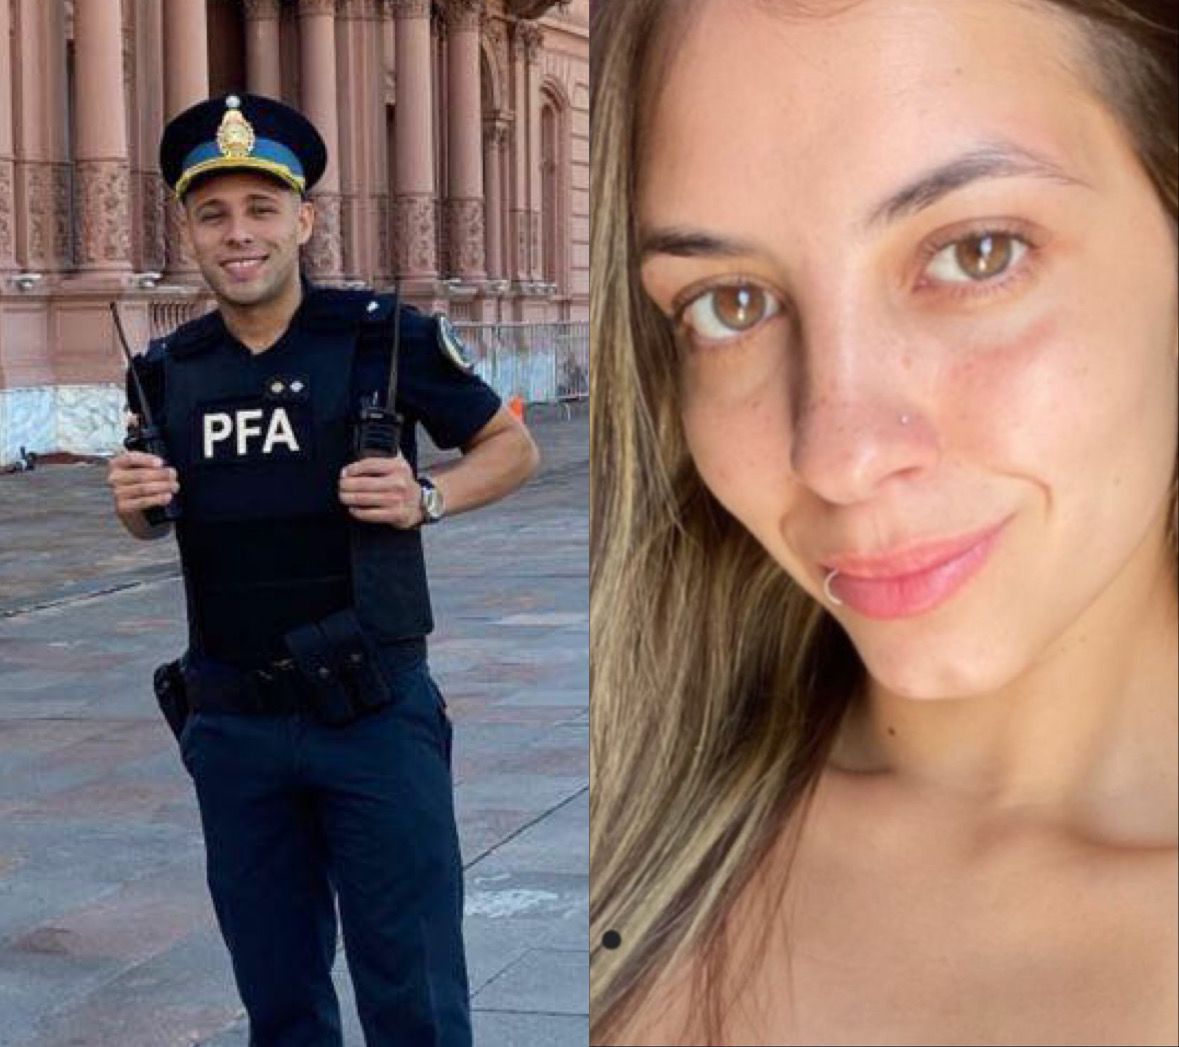 Salvaje asalto en Acceso Oeste: un policía baleado y su novia asesinada por la moto